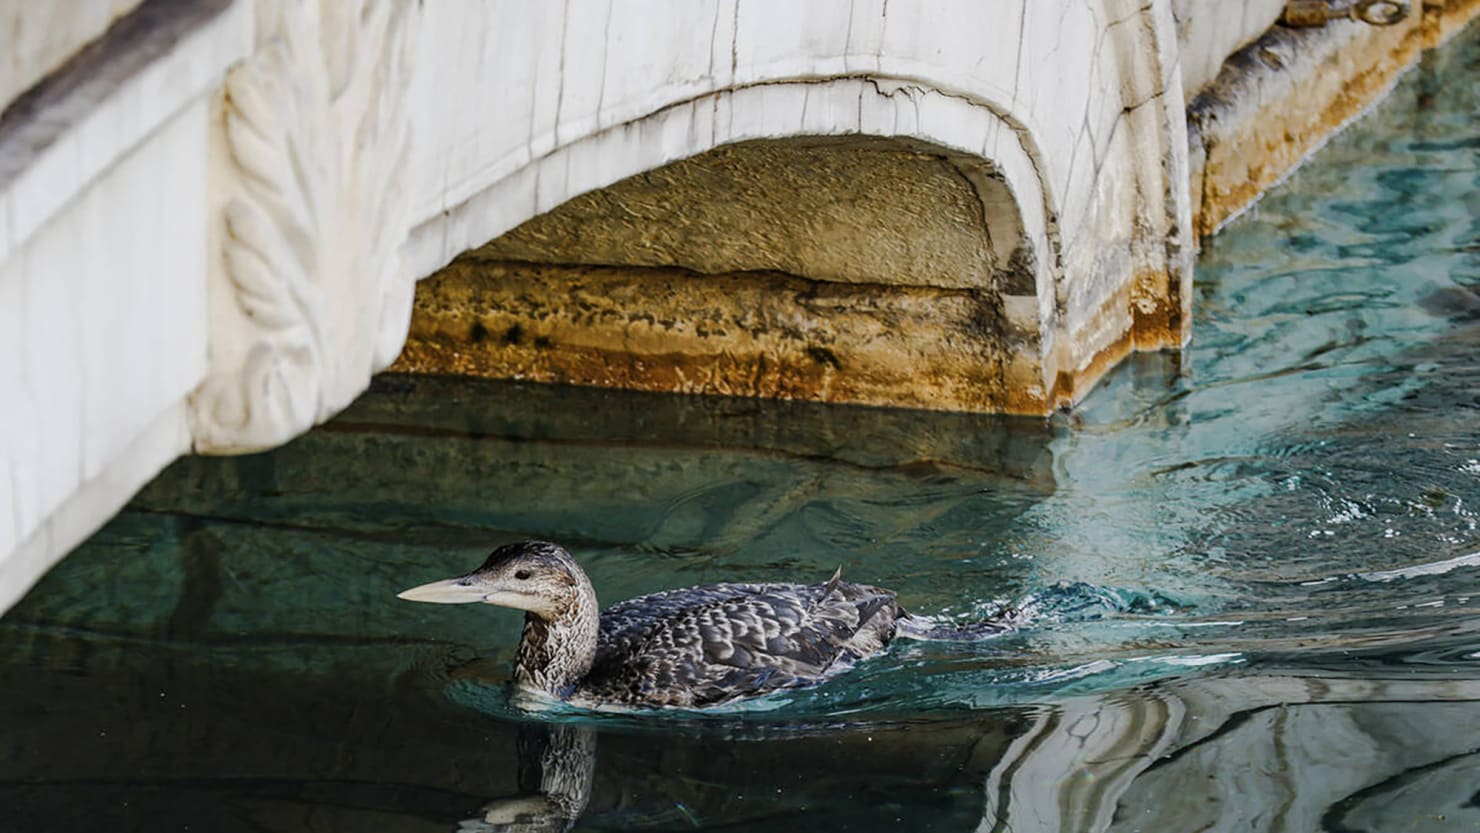 L’observation d’oiseaux rares interrompt l’emblématique spectacle de fontaines du Bellagio